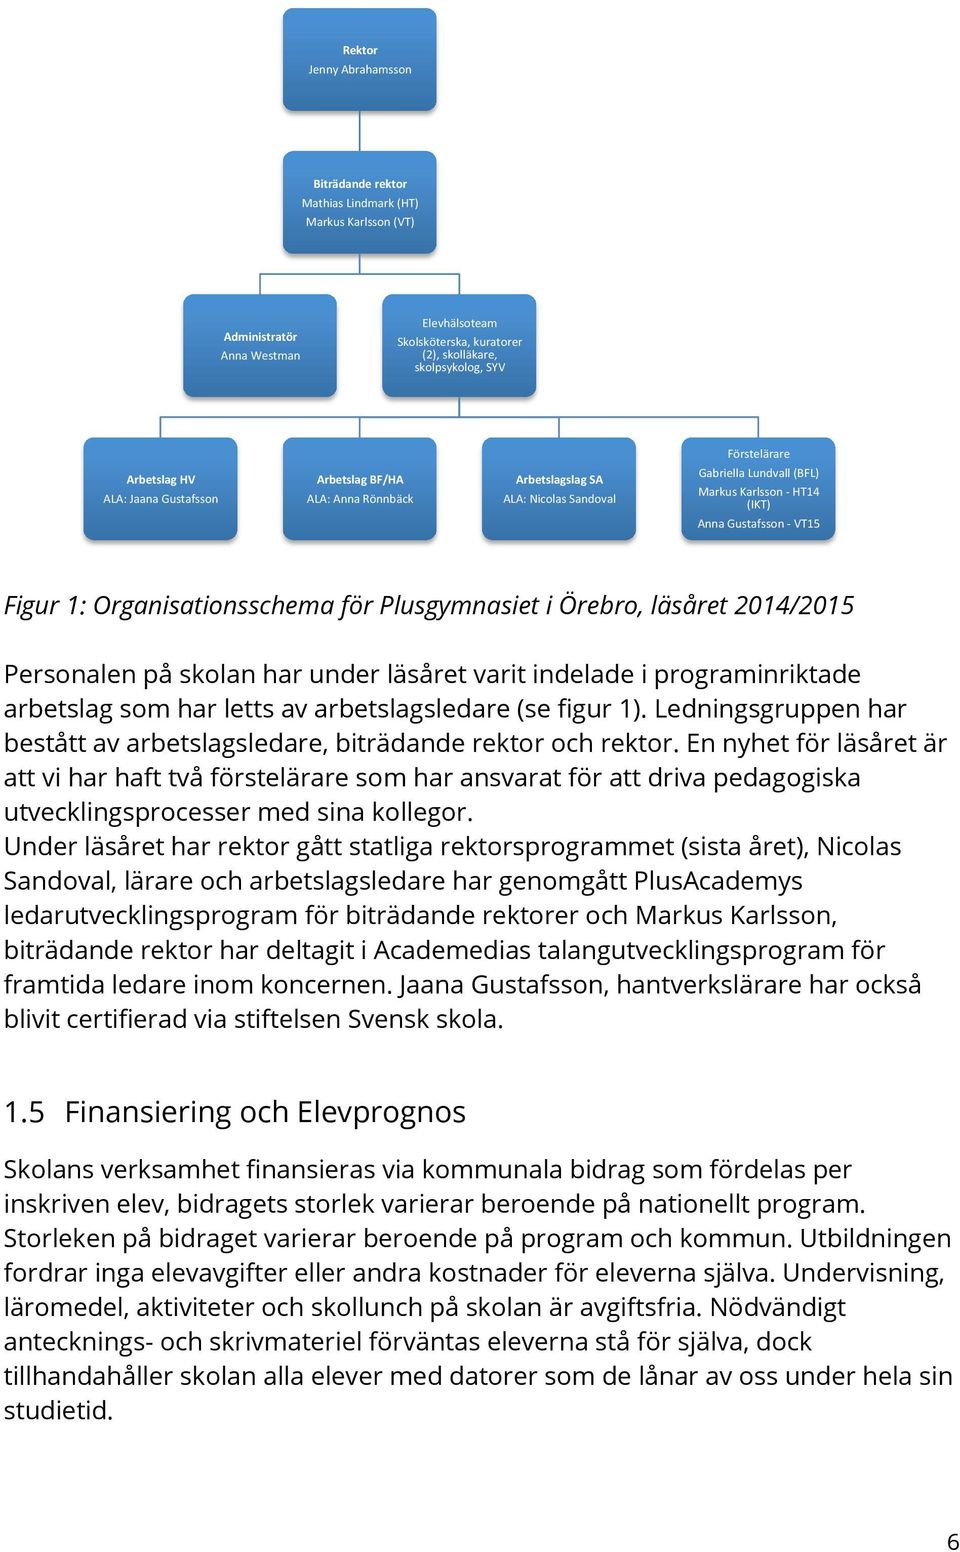 Organisationsschema för Plusgymnasiet i Örebro, läsåret 2014/2015 Personalen på skolan har under läsåret varit indelade i programinriktade arbetslag som har letts av arbetslagsledare (se figur 1).